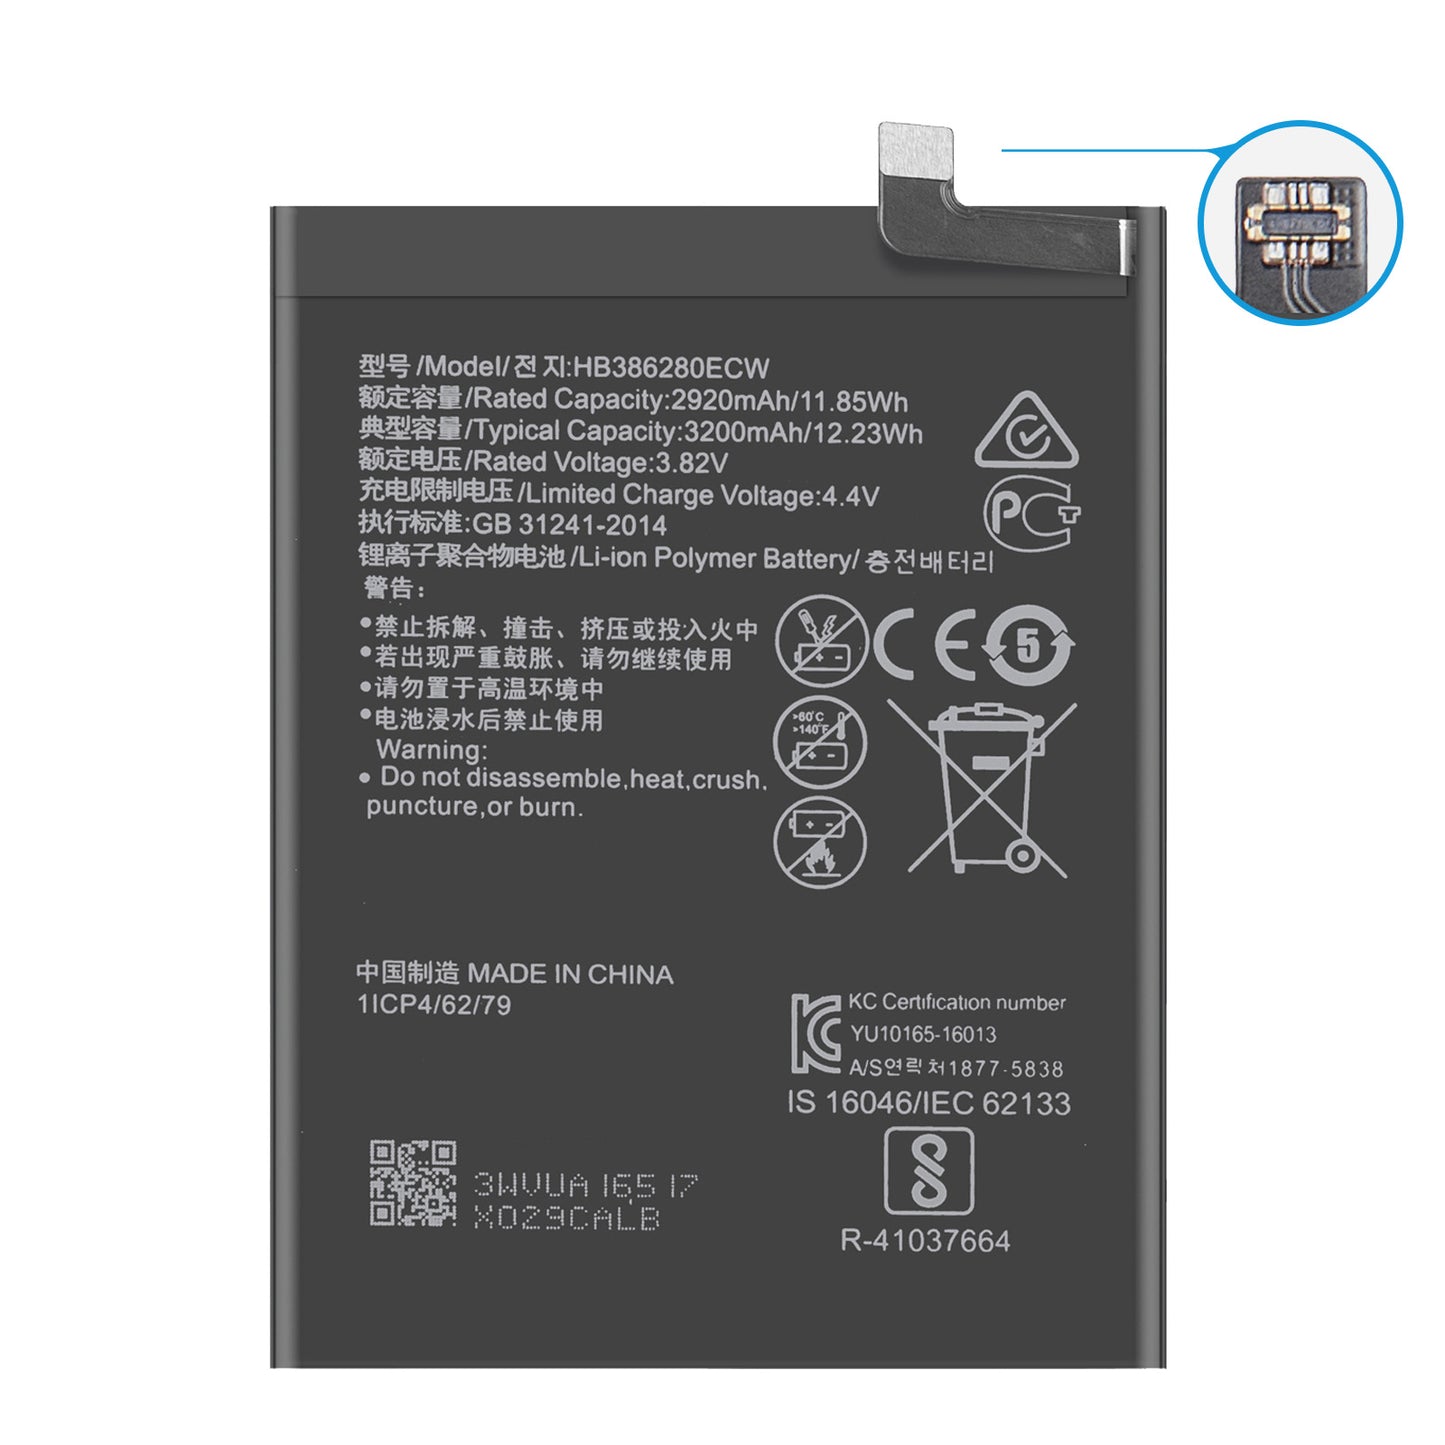 Bei Dinngs.de finden Sie einen Ersatzakku für Ihr Huawei Honor 9. Dieser ersetzt den originalen Akku HB386280ECW | Inklusive Werkzeugset und Klebestreifen.